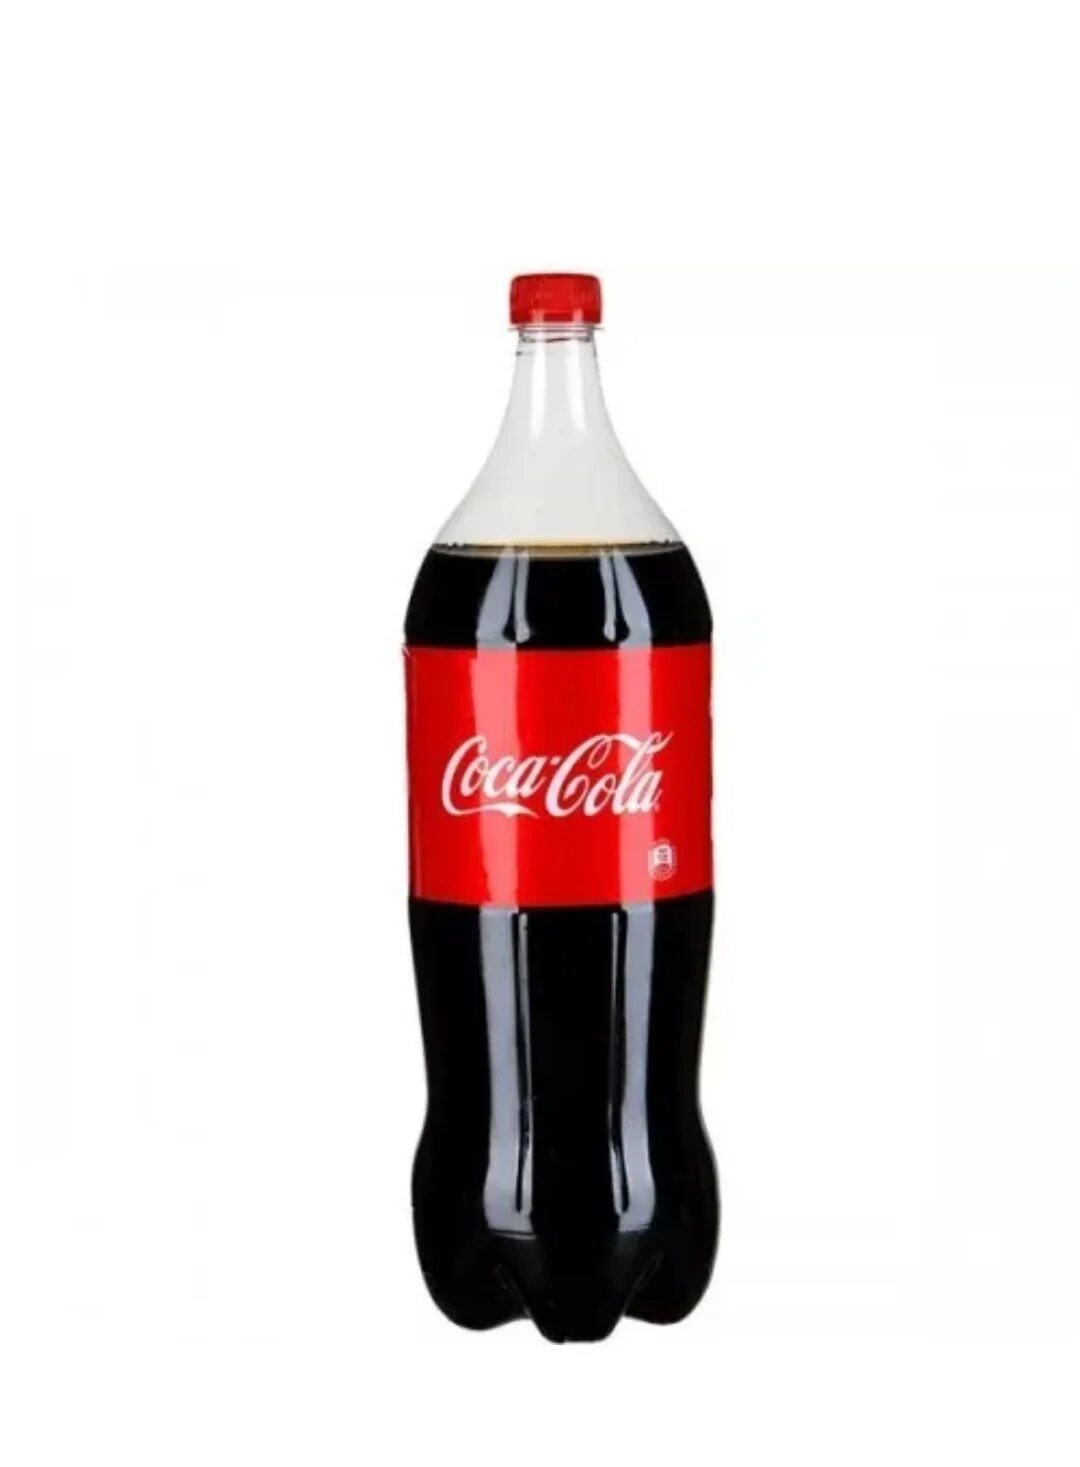 Кока кола литр купить. Напиток Кока-кола 2л ПЭТ. Coca Cola 2 л. Напиток Кока-кола сильногазированный 2л пэтгггггоогогонннноннн. Газированный напиток Coca-Cola 2 л.